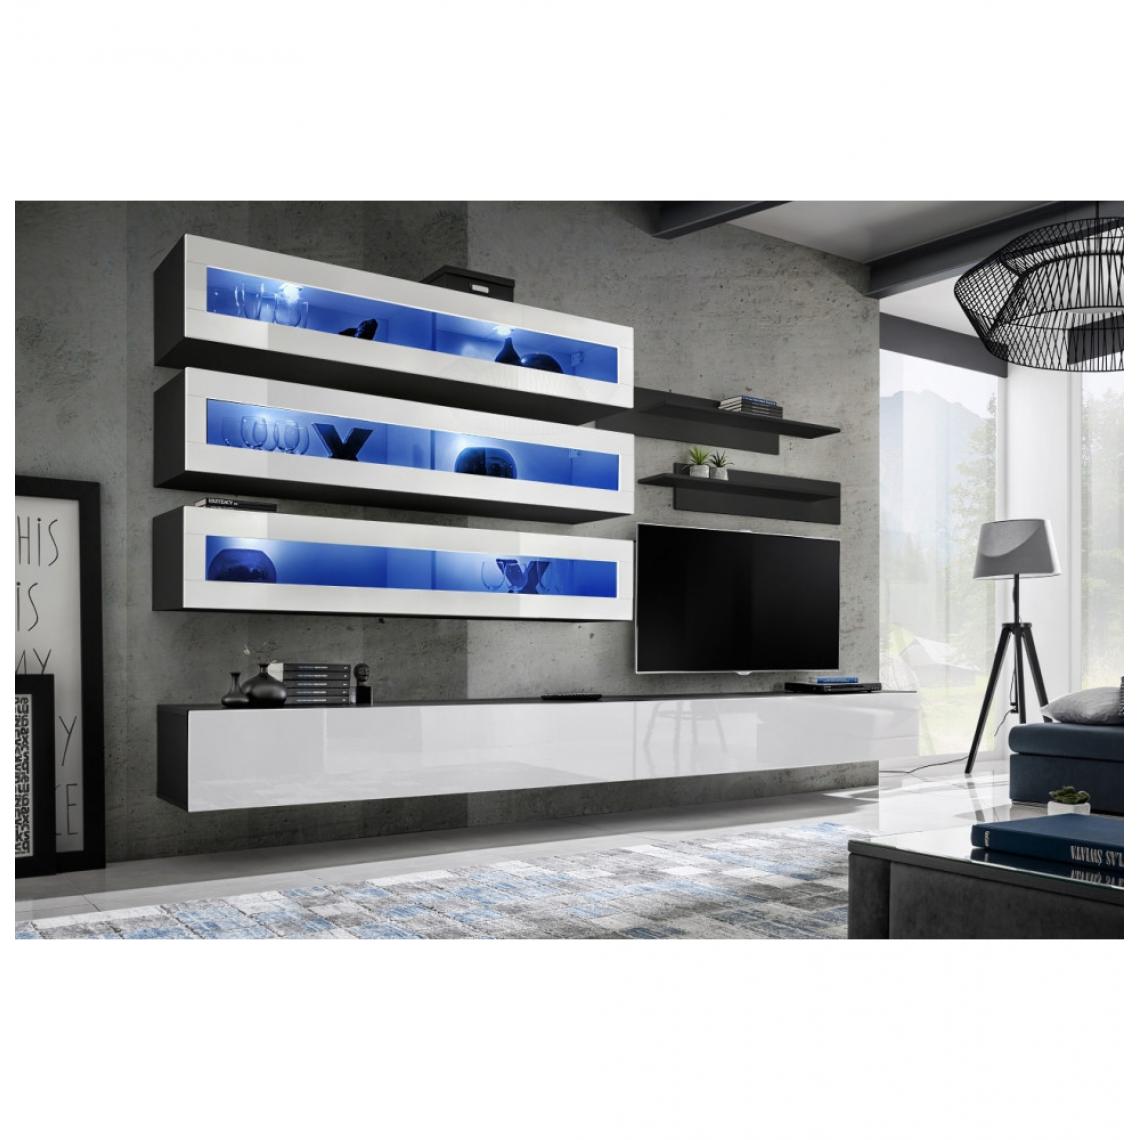 Ac-Deco - Ensemble mural - FLY J - 3 rangements LED - 2 meubles TV - 2 étagères - Noir et blanc - Modèle 1 - Meubles TV, Hi-Fi